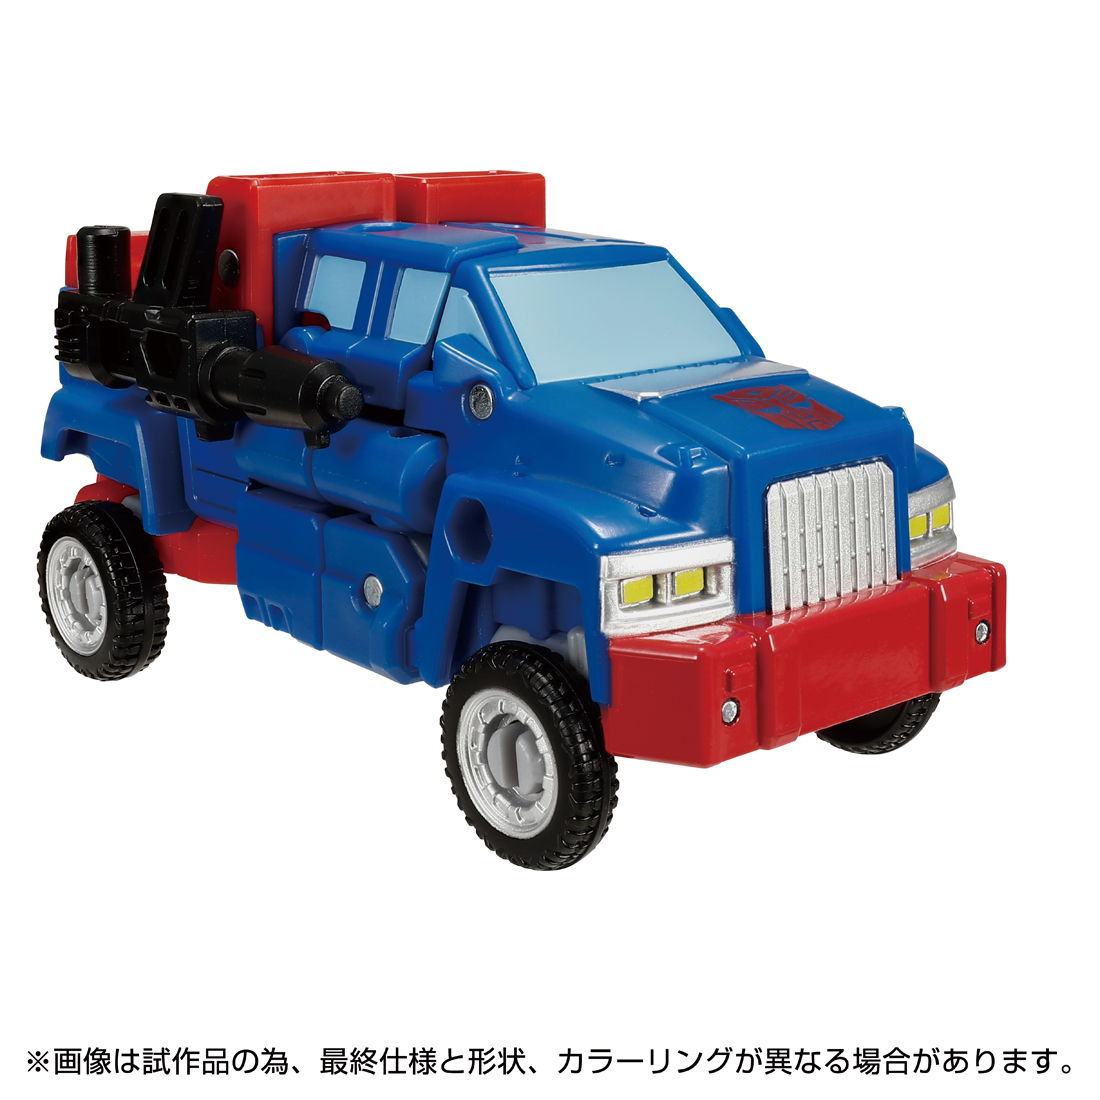  Takara Tommy Transformer TL-75 авто boto Gears возвращенный товар вид другой B